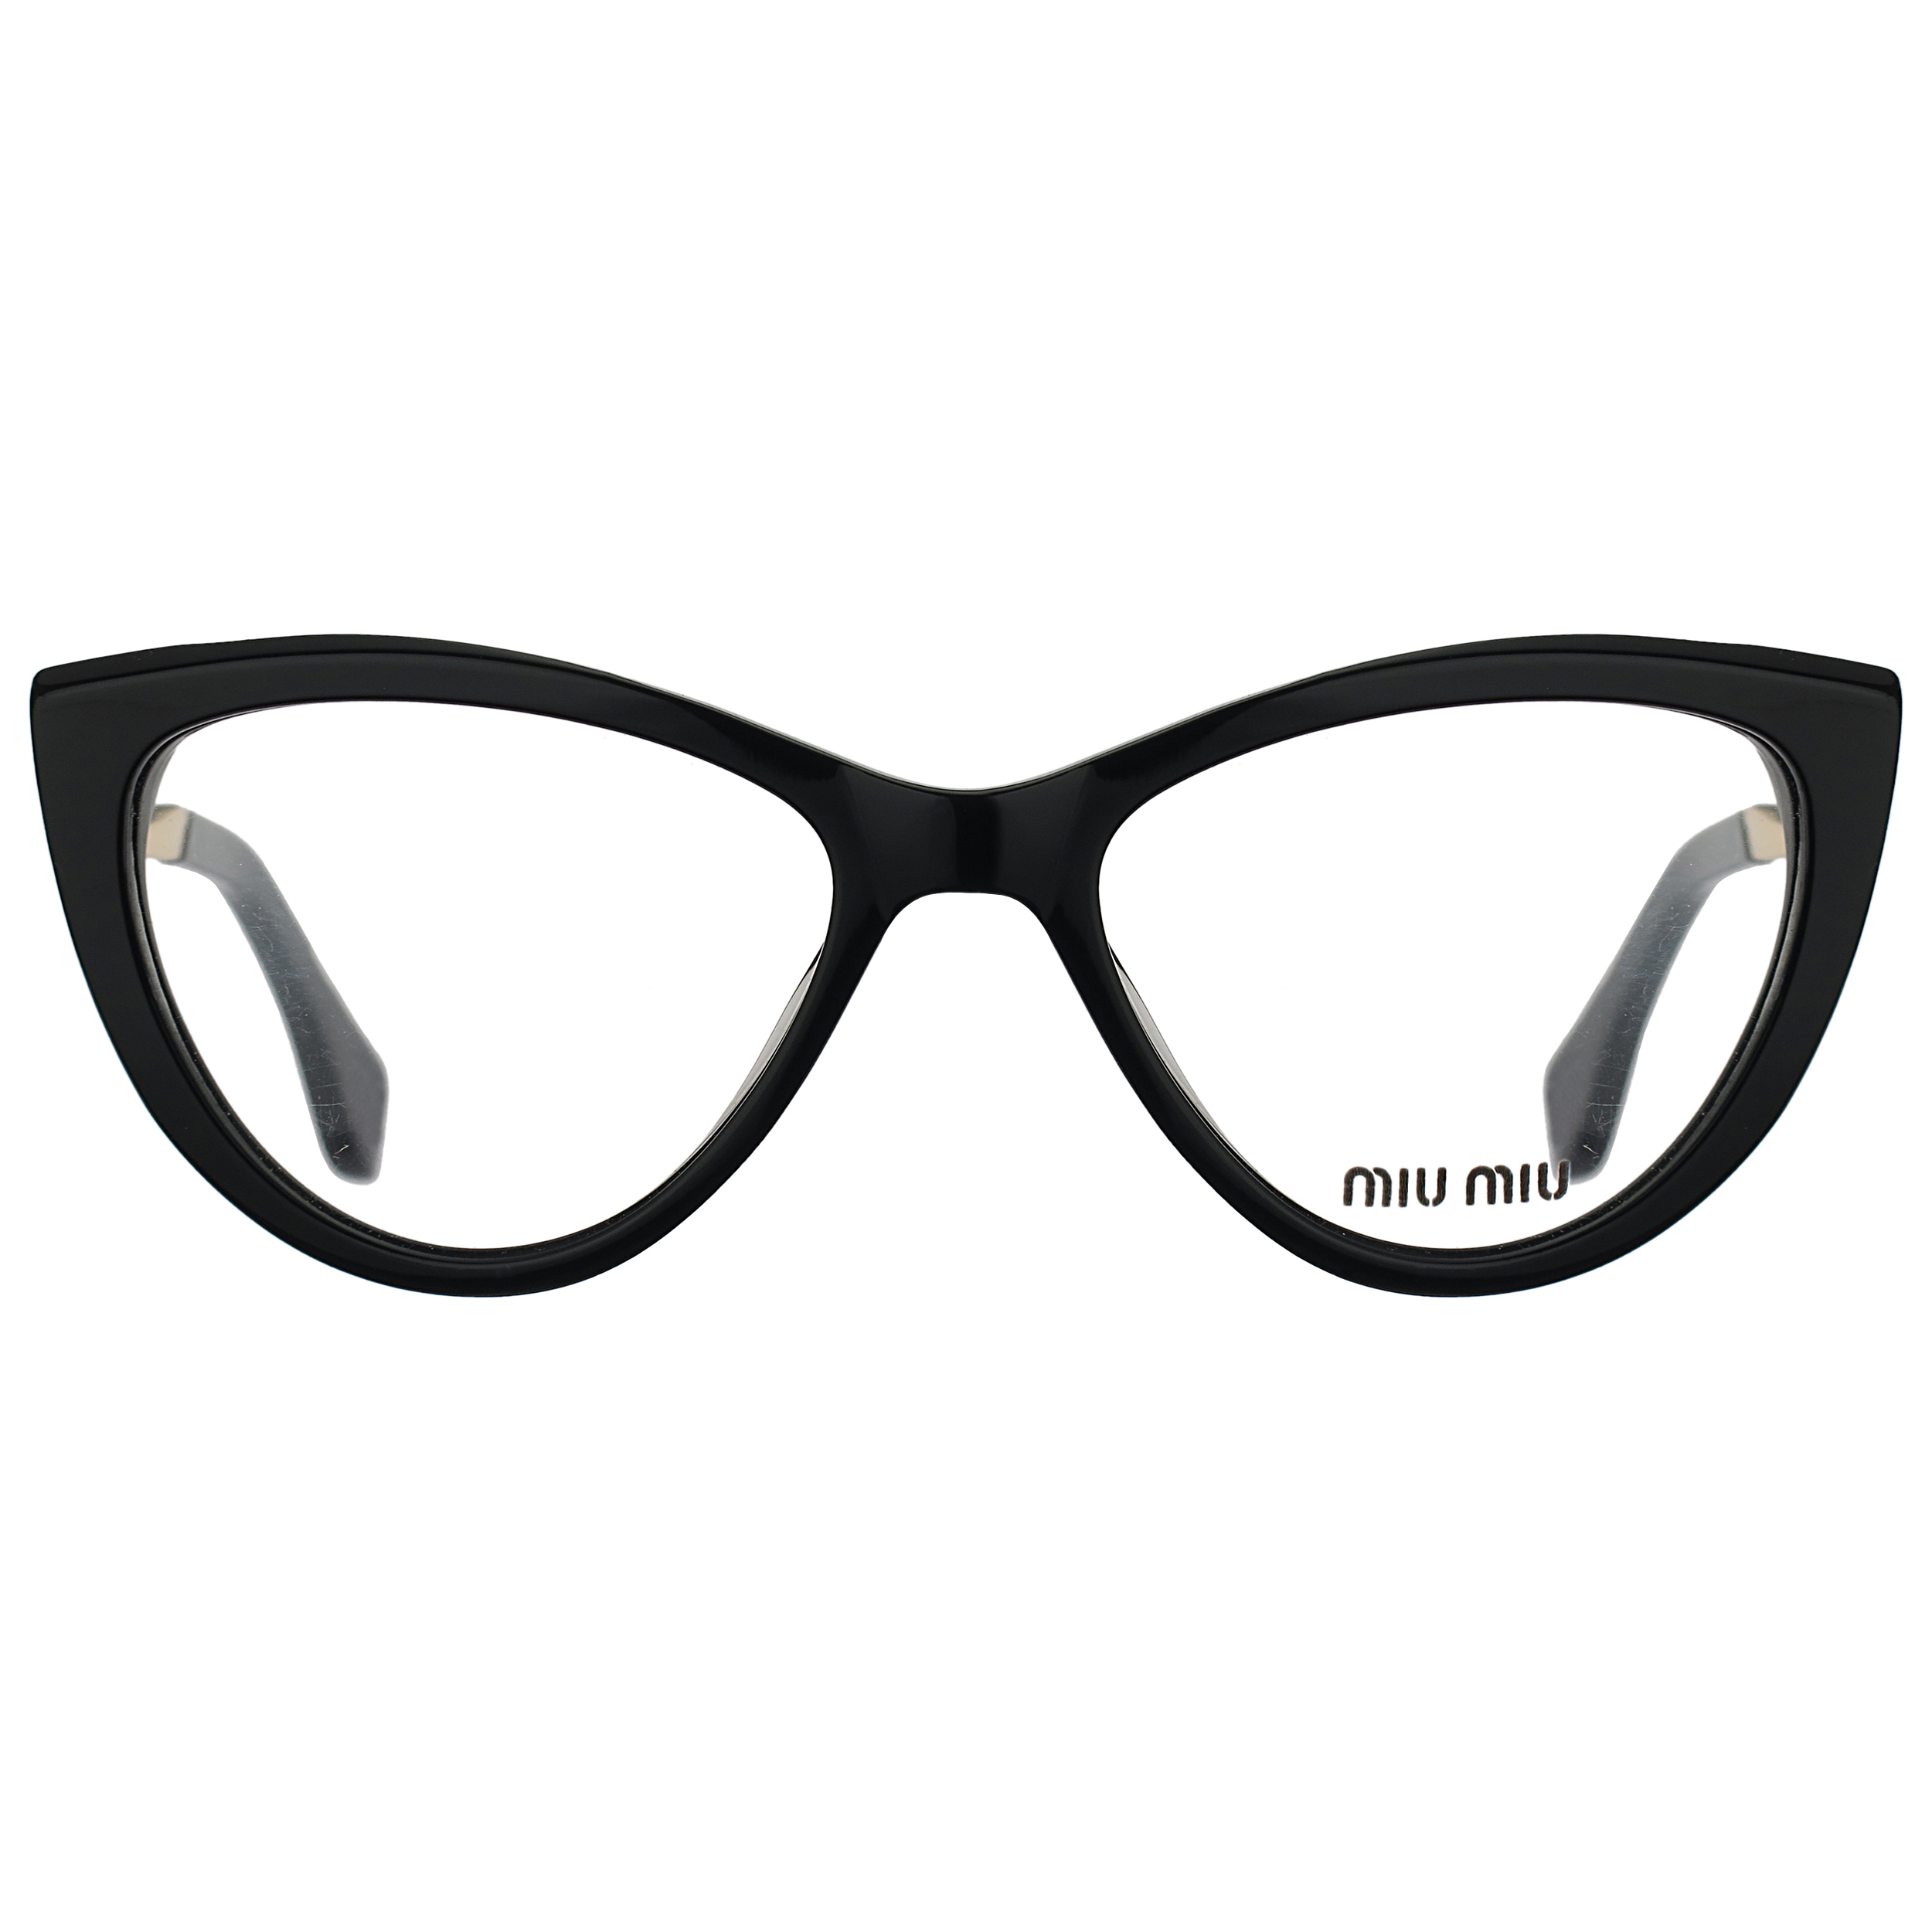 فریم عینک طبی میو میو مدل VMU 01 V